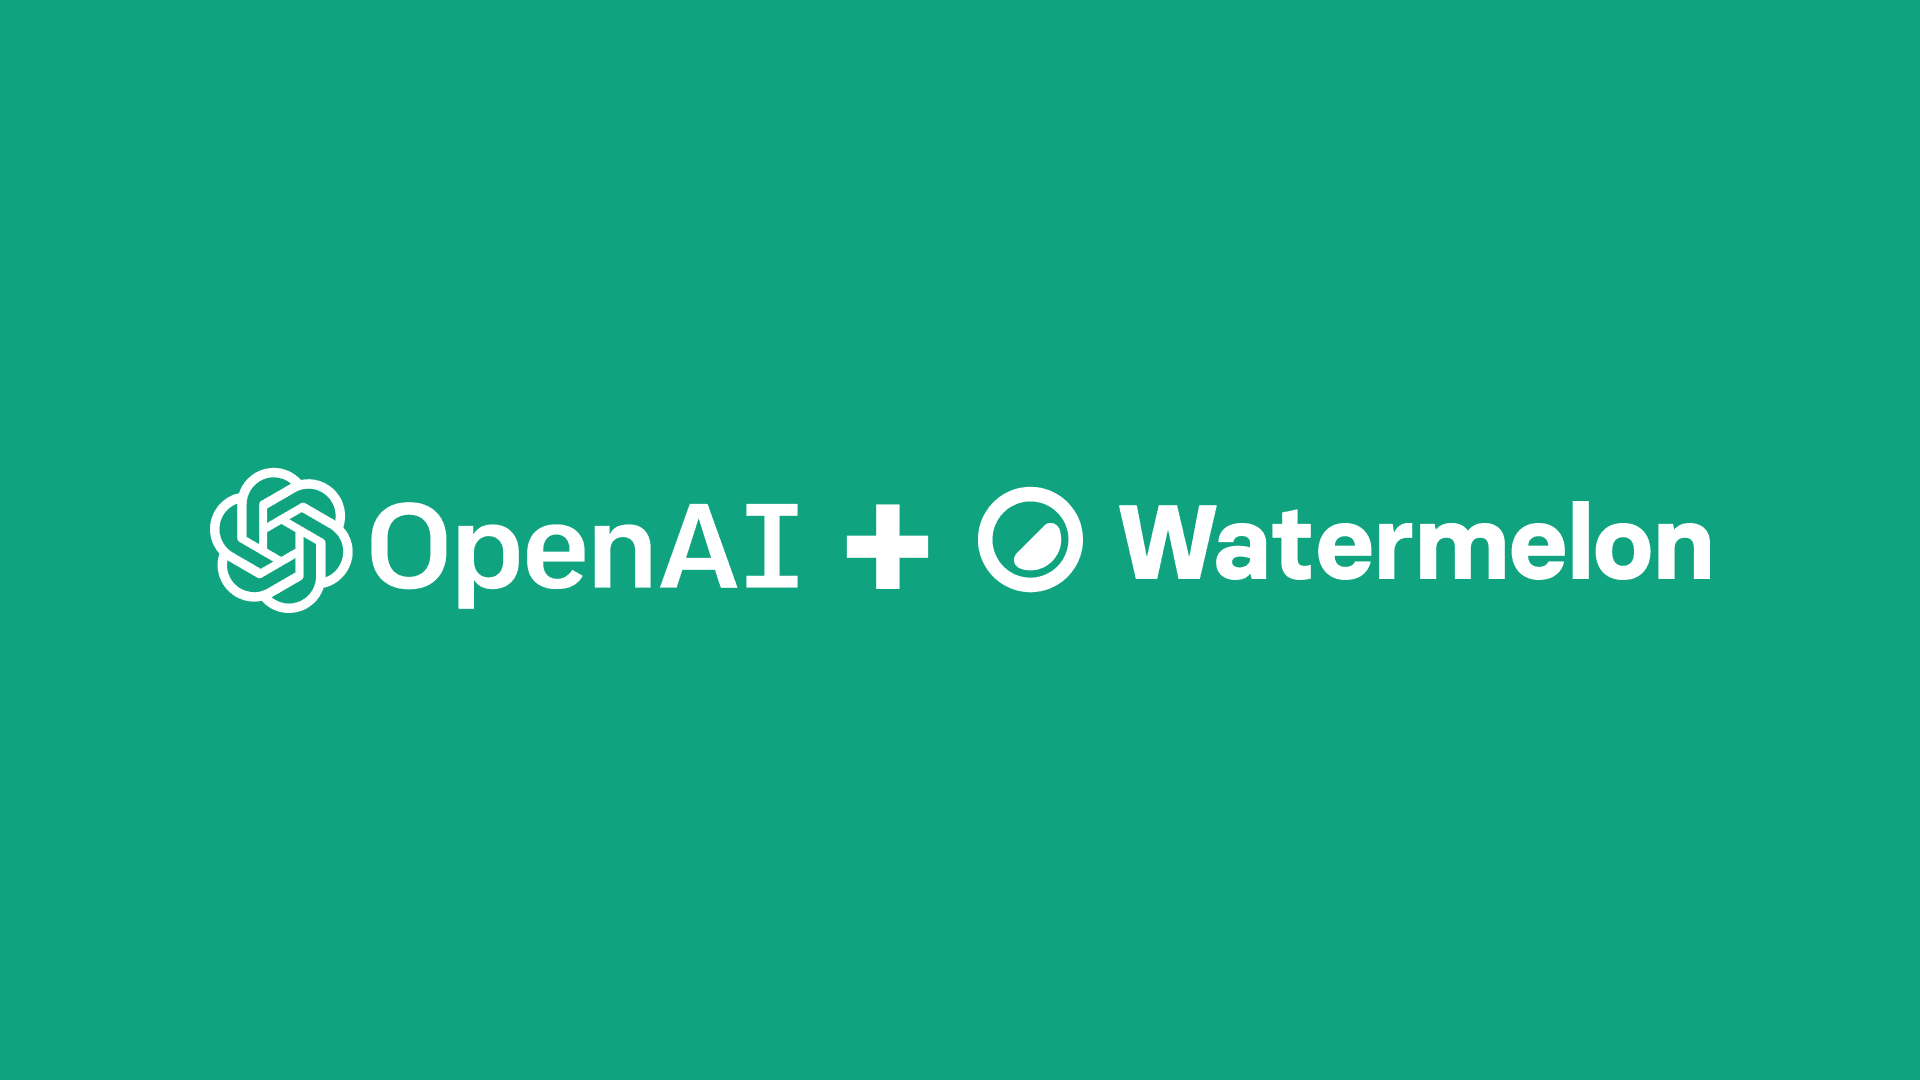 OpenAI + Watermelon